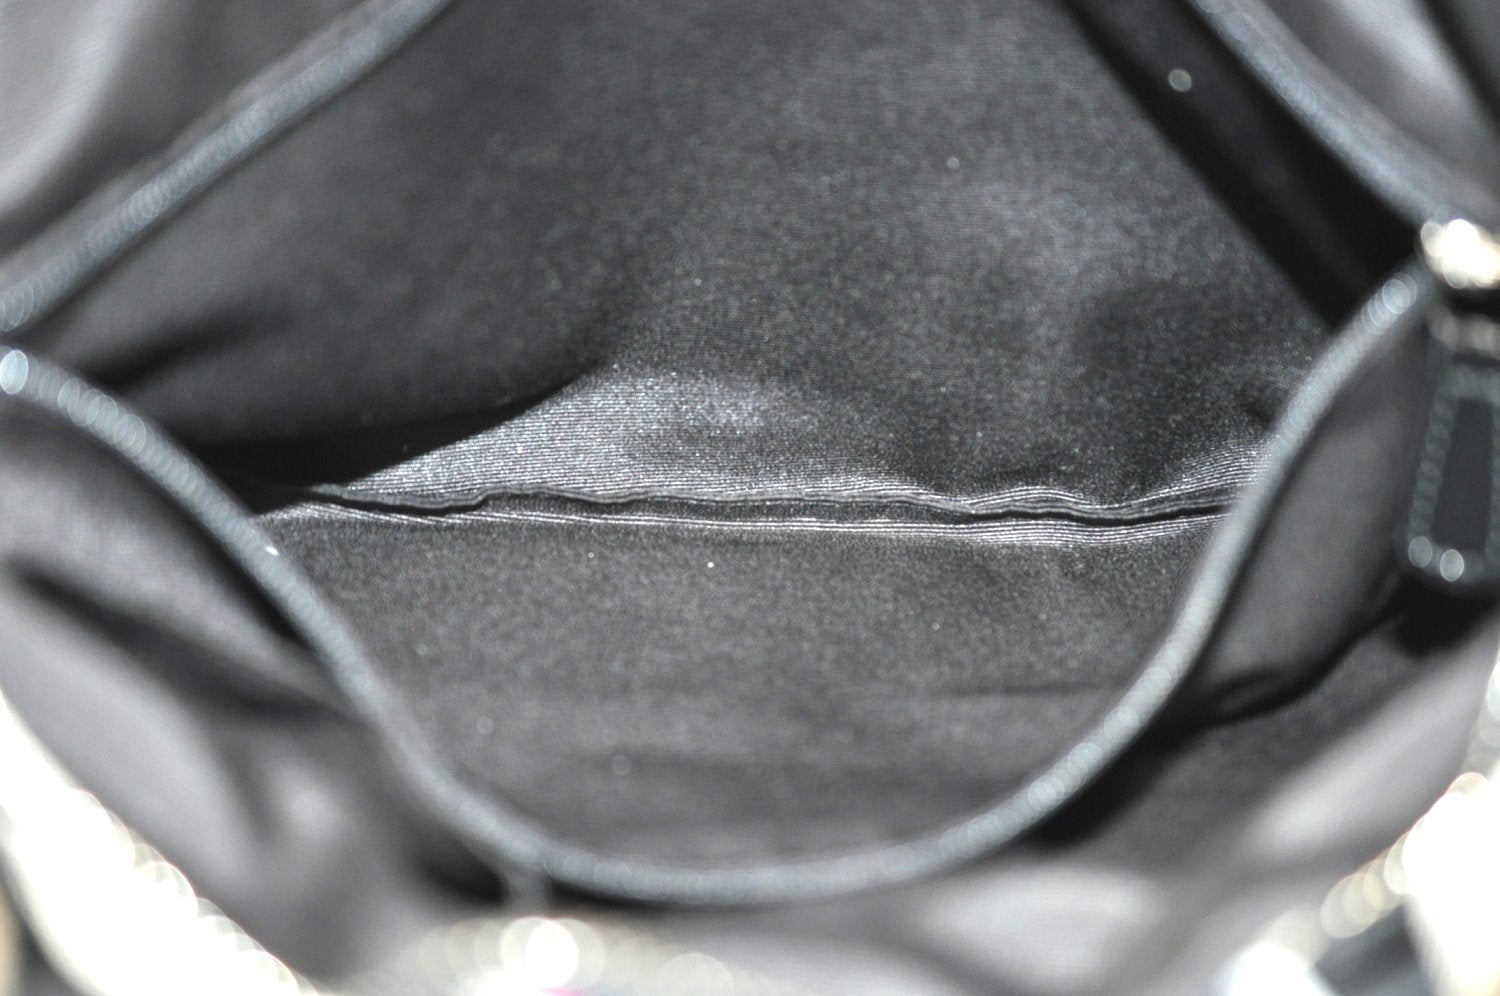 Authentic COACH Signature Shoulder Tote Bag Canvas Enamel F24666 Black K4134